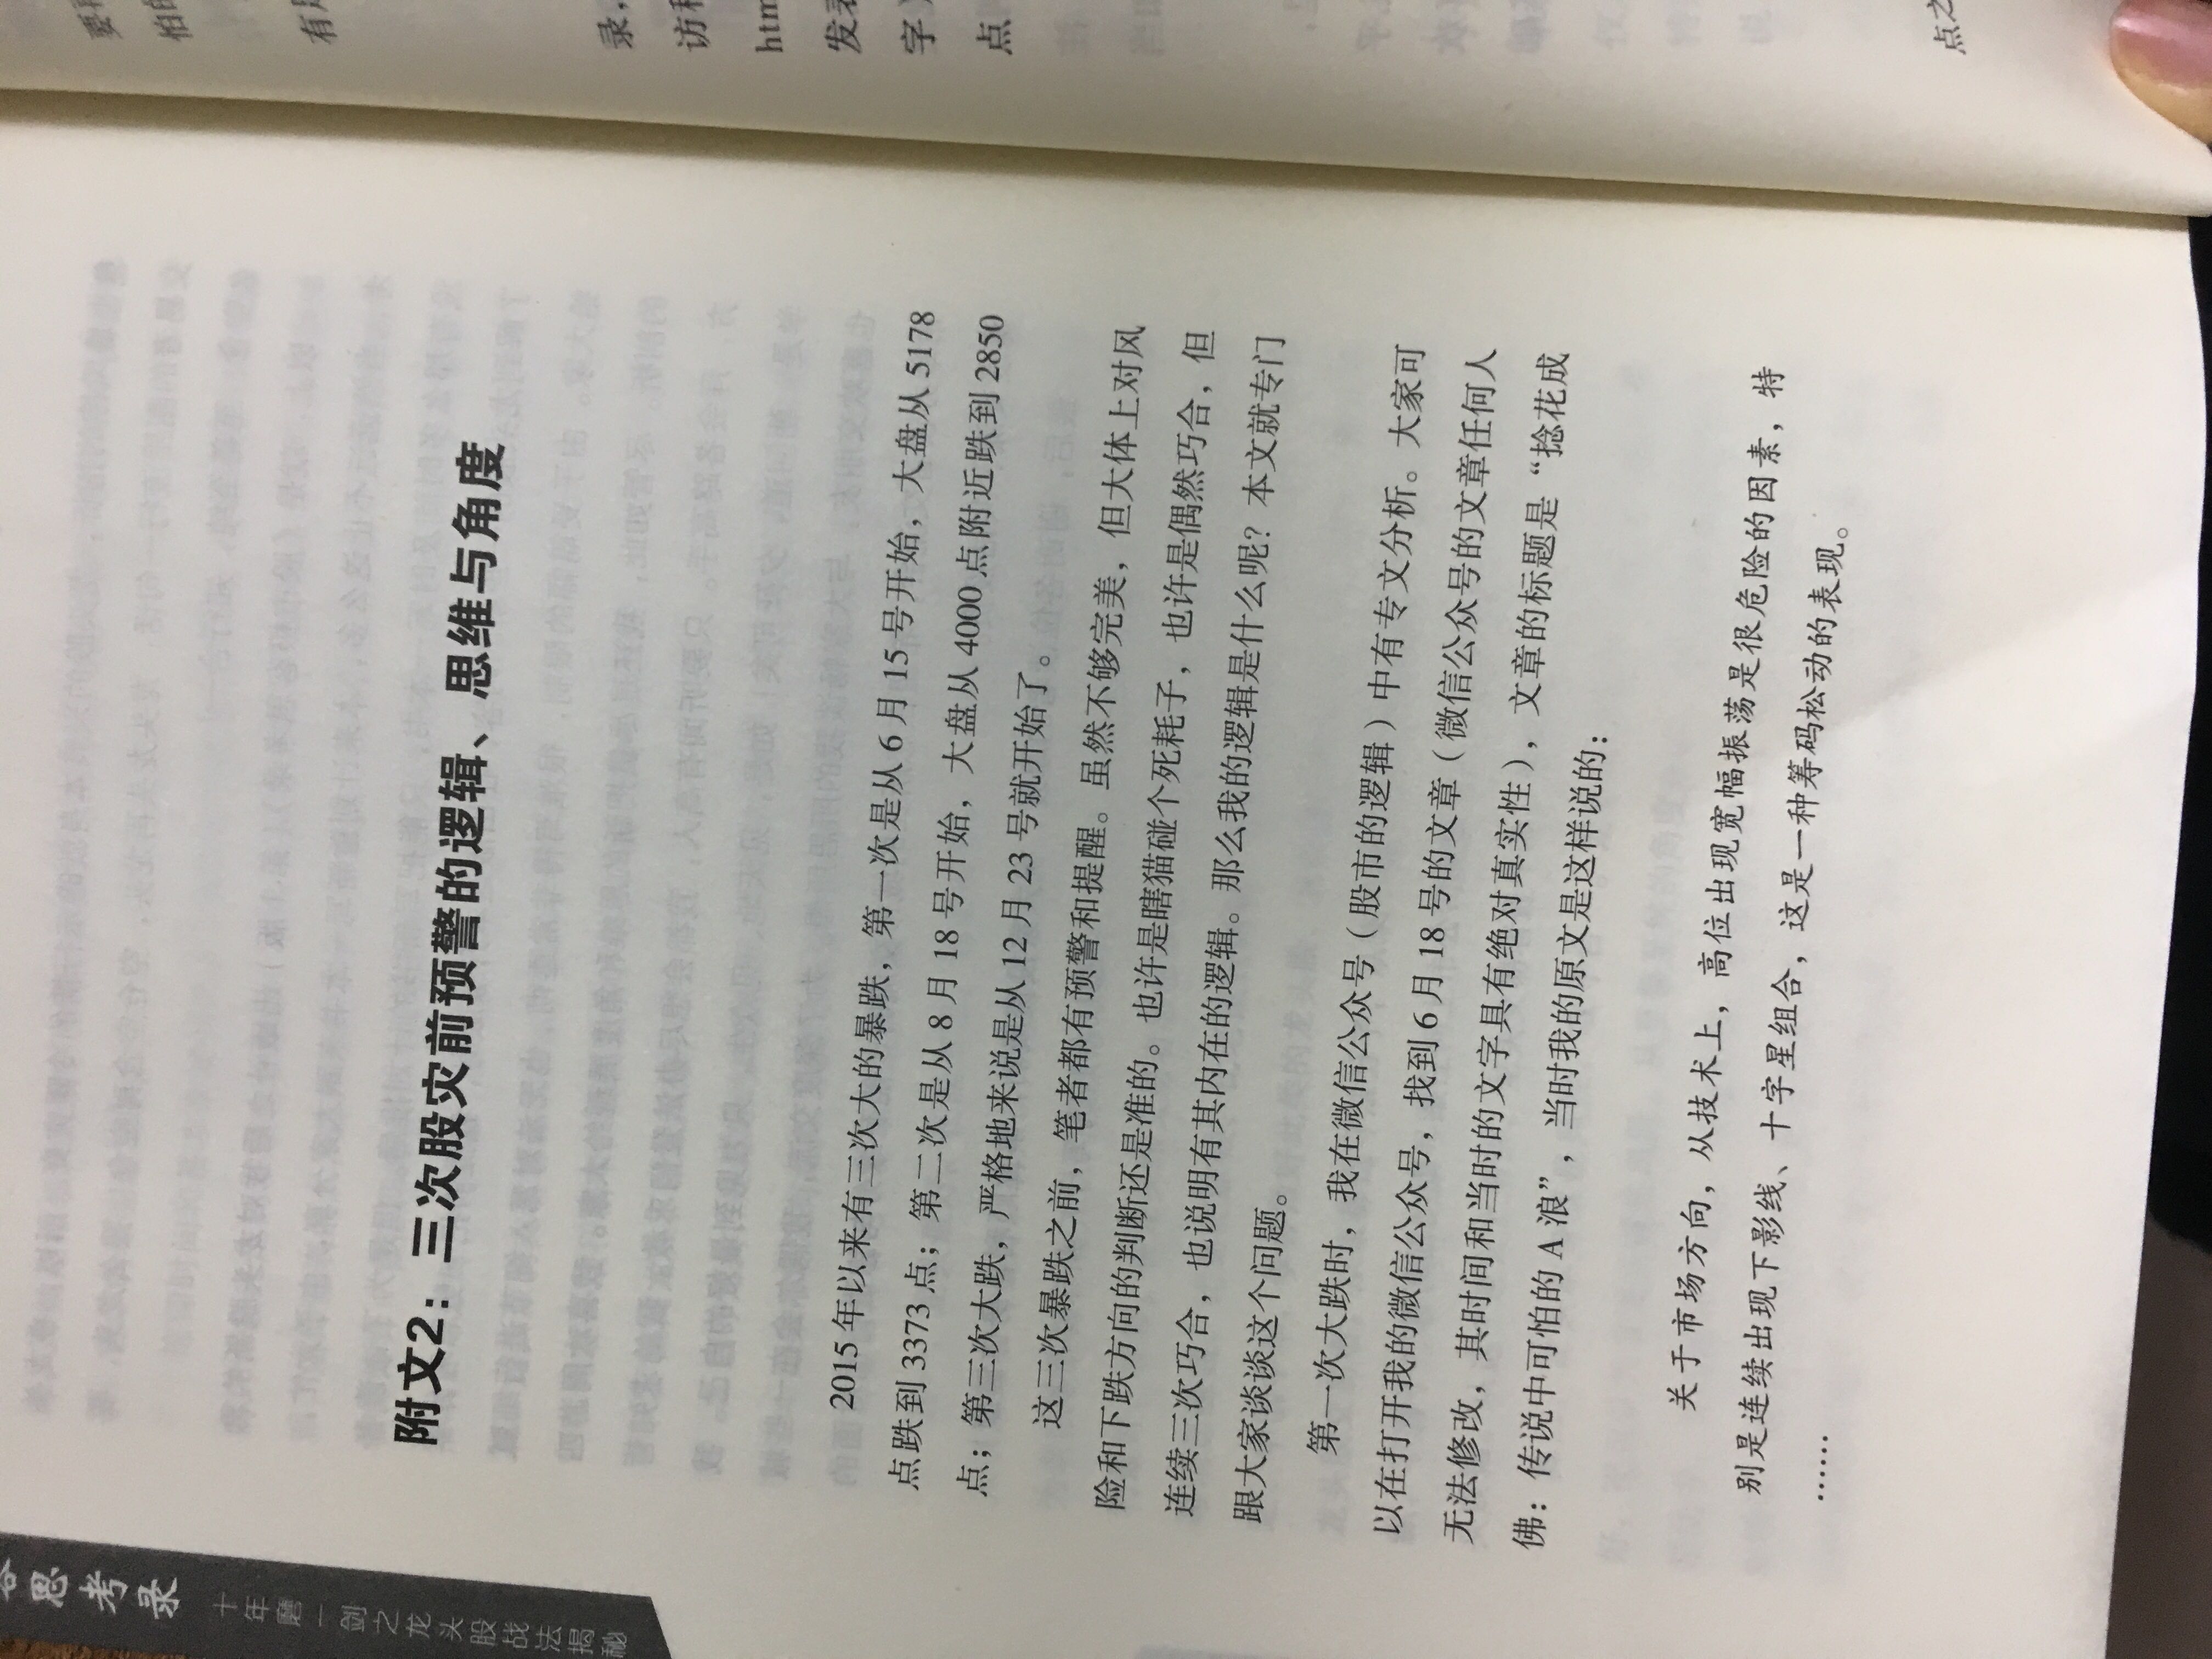 彭道富老师的这本升级版，很不错，尤其是附录增加的好几十页，很有指导意义的。